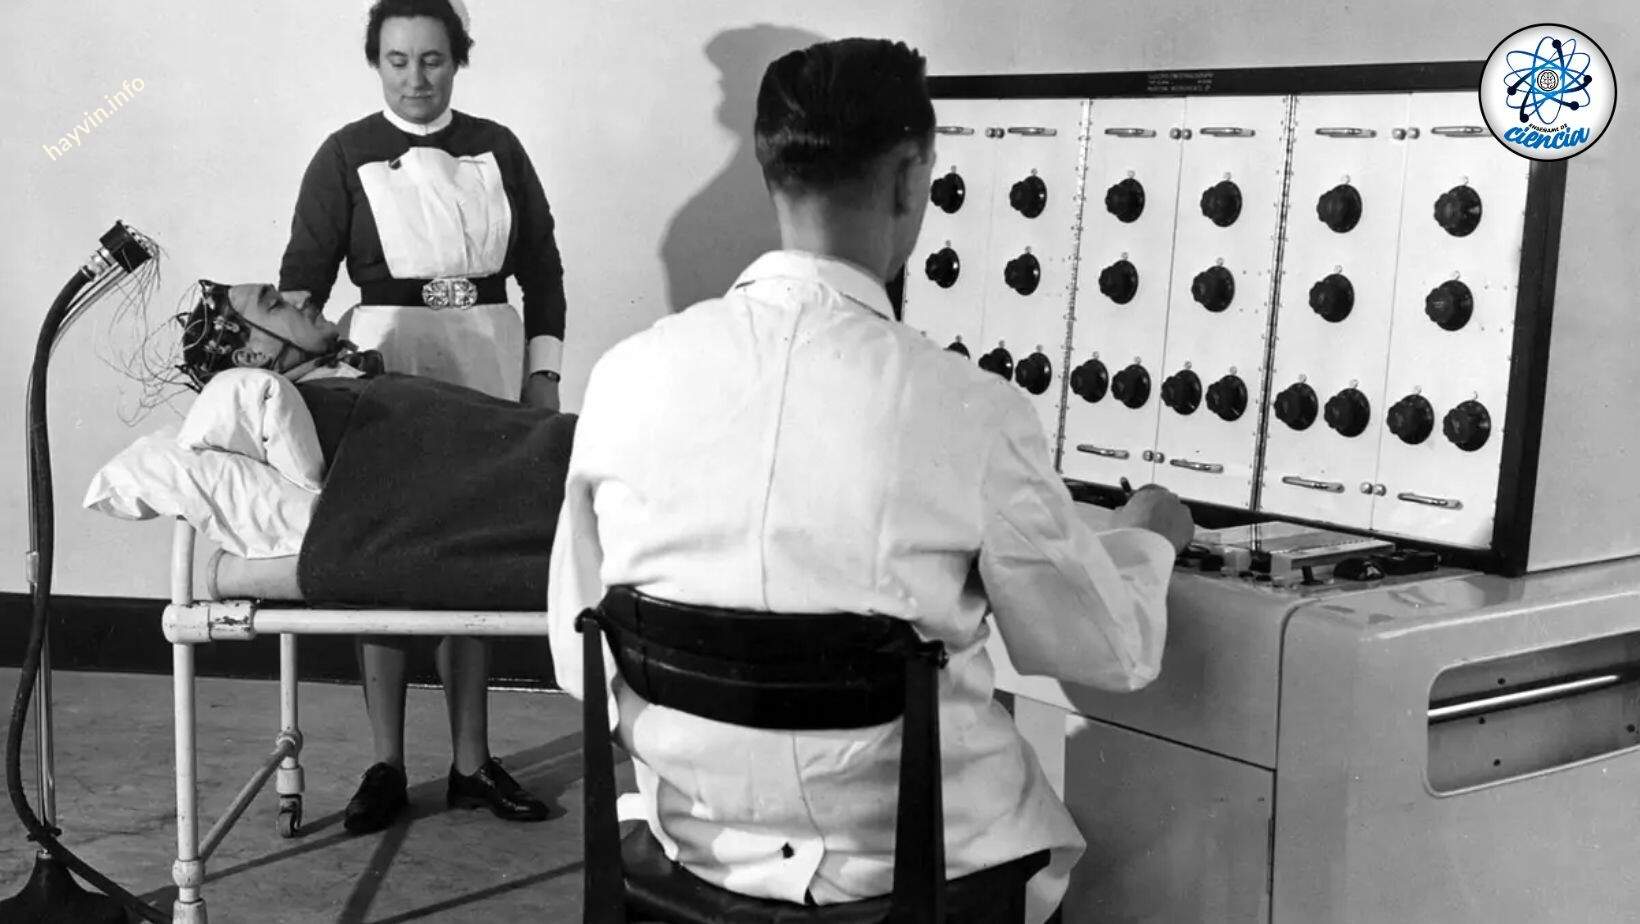 Meddig lennél hajlandó engedelmeskedni a tekintélynek? Milgram zavaró kísérlete